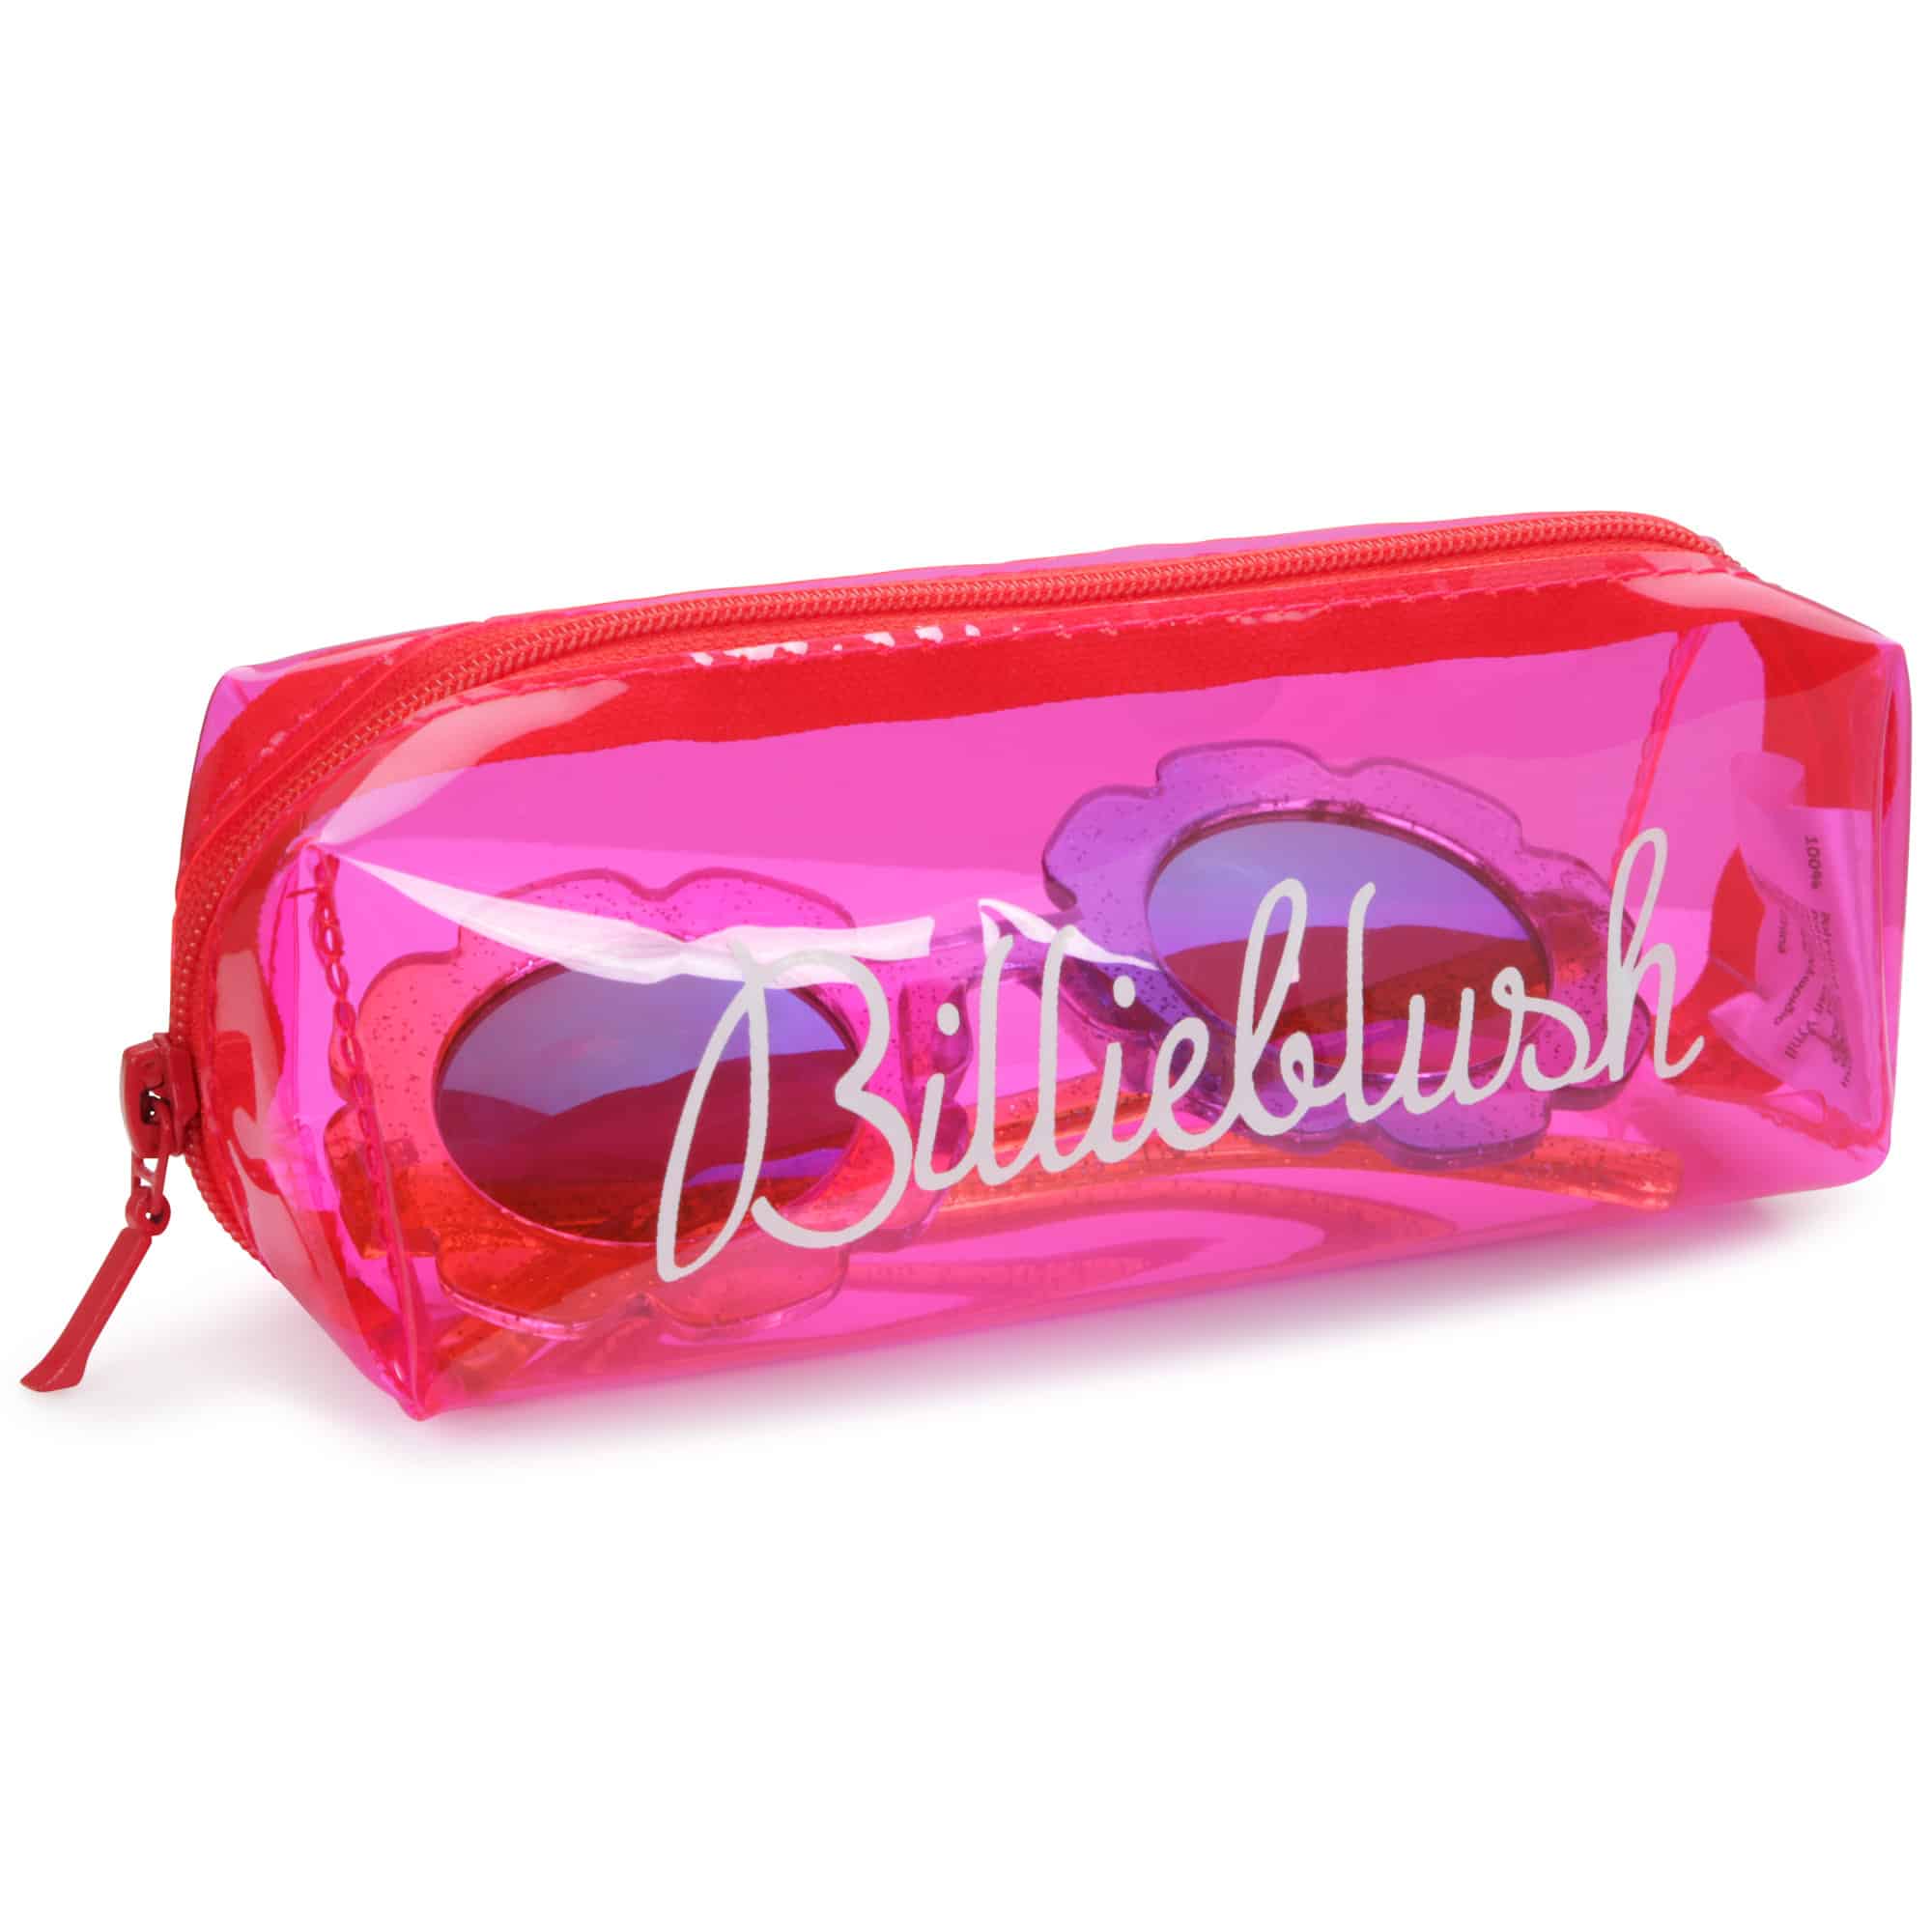 Billieblush multi coloured flower 70s inspired girls sunglasses in pink case